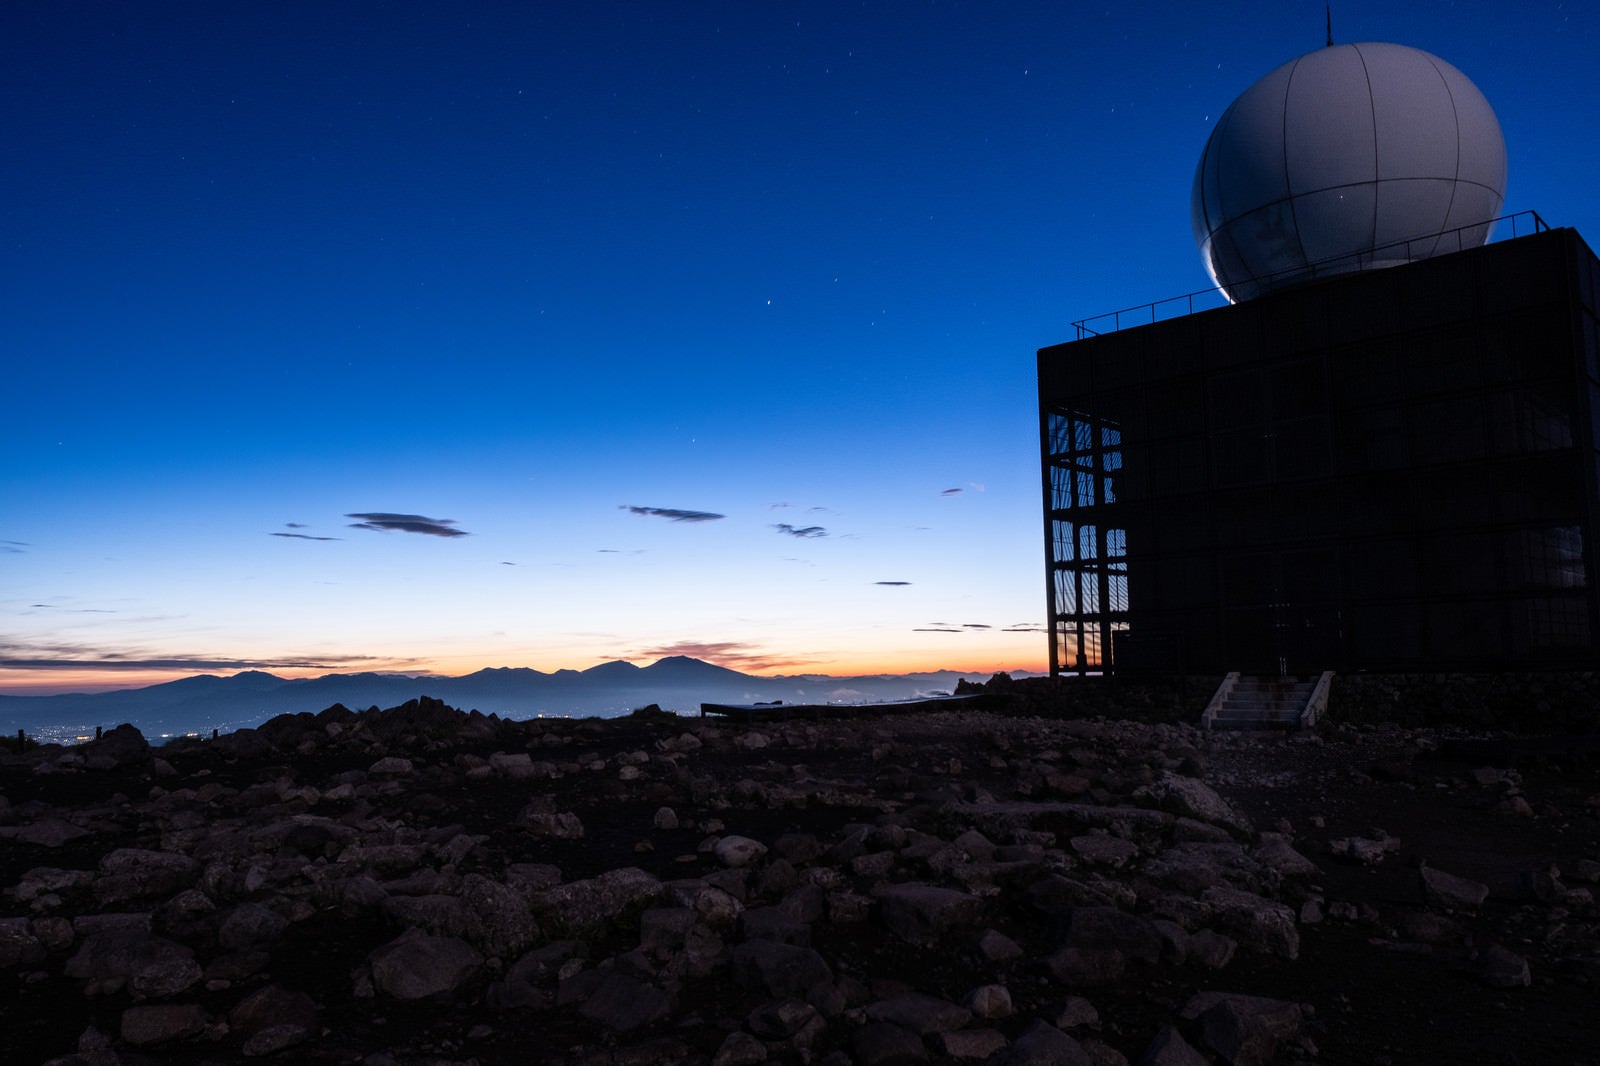 「車山気象レーダー観測所と夕焼け空」の写真